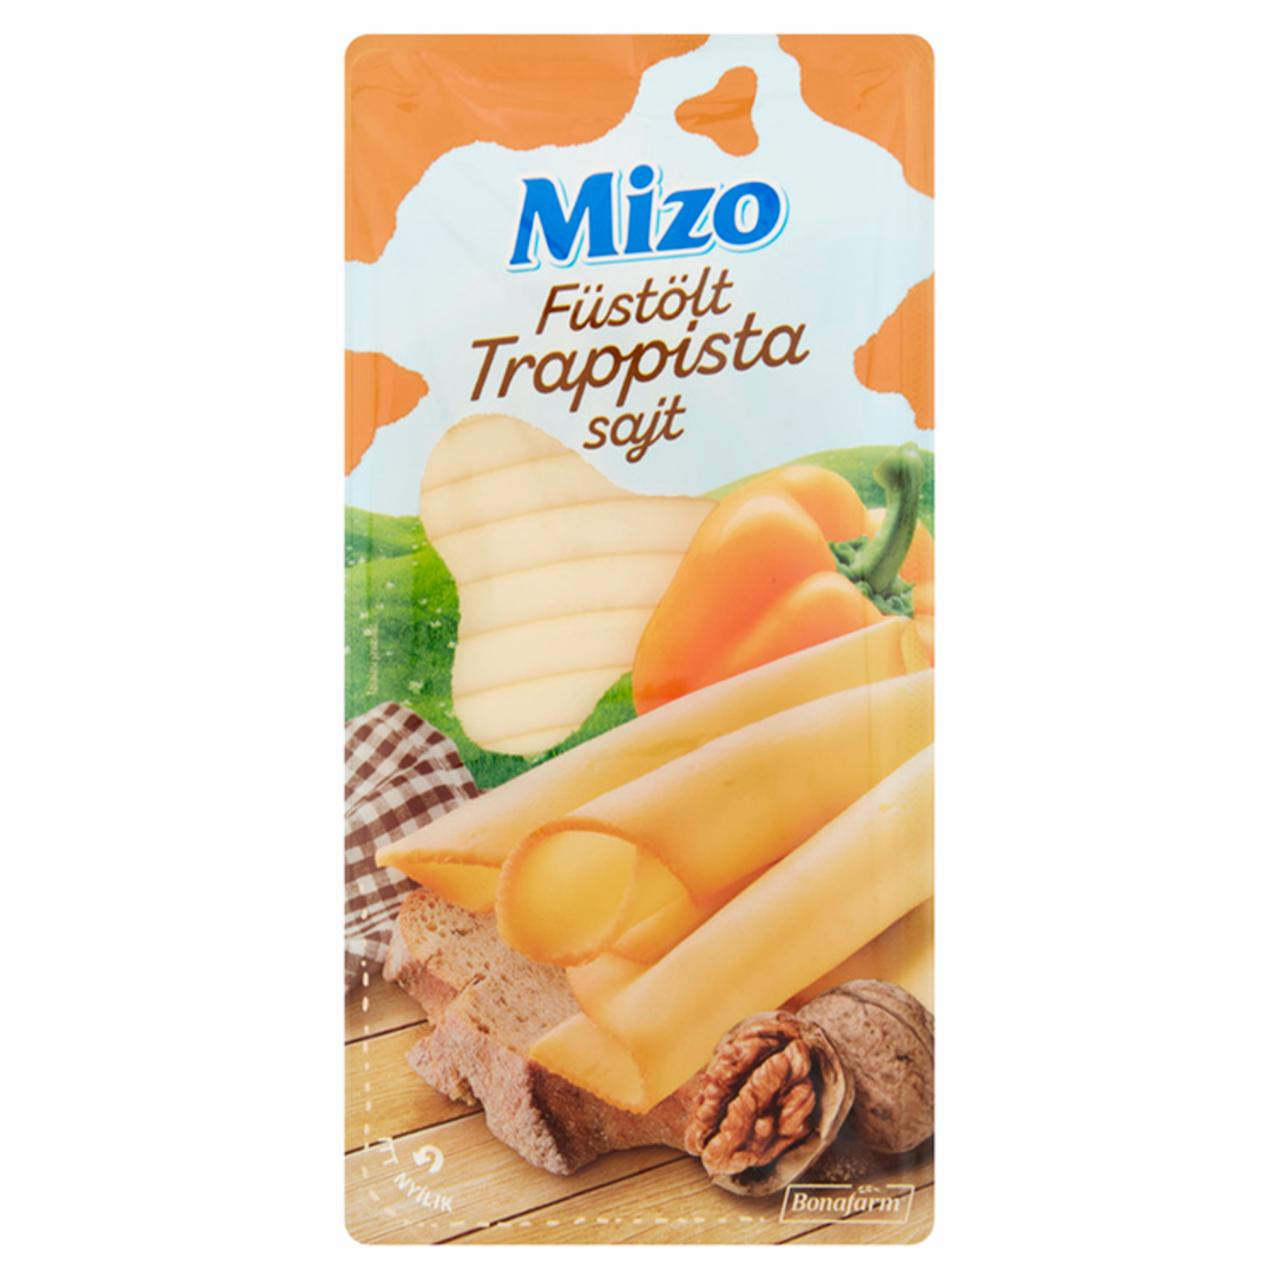 Képek - Mizo szeletelt füstölt trappista sajt 100 g